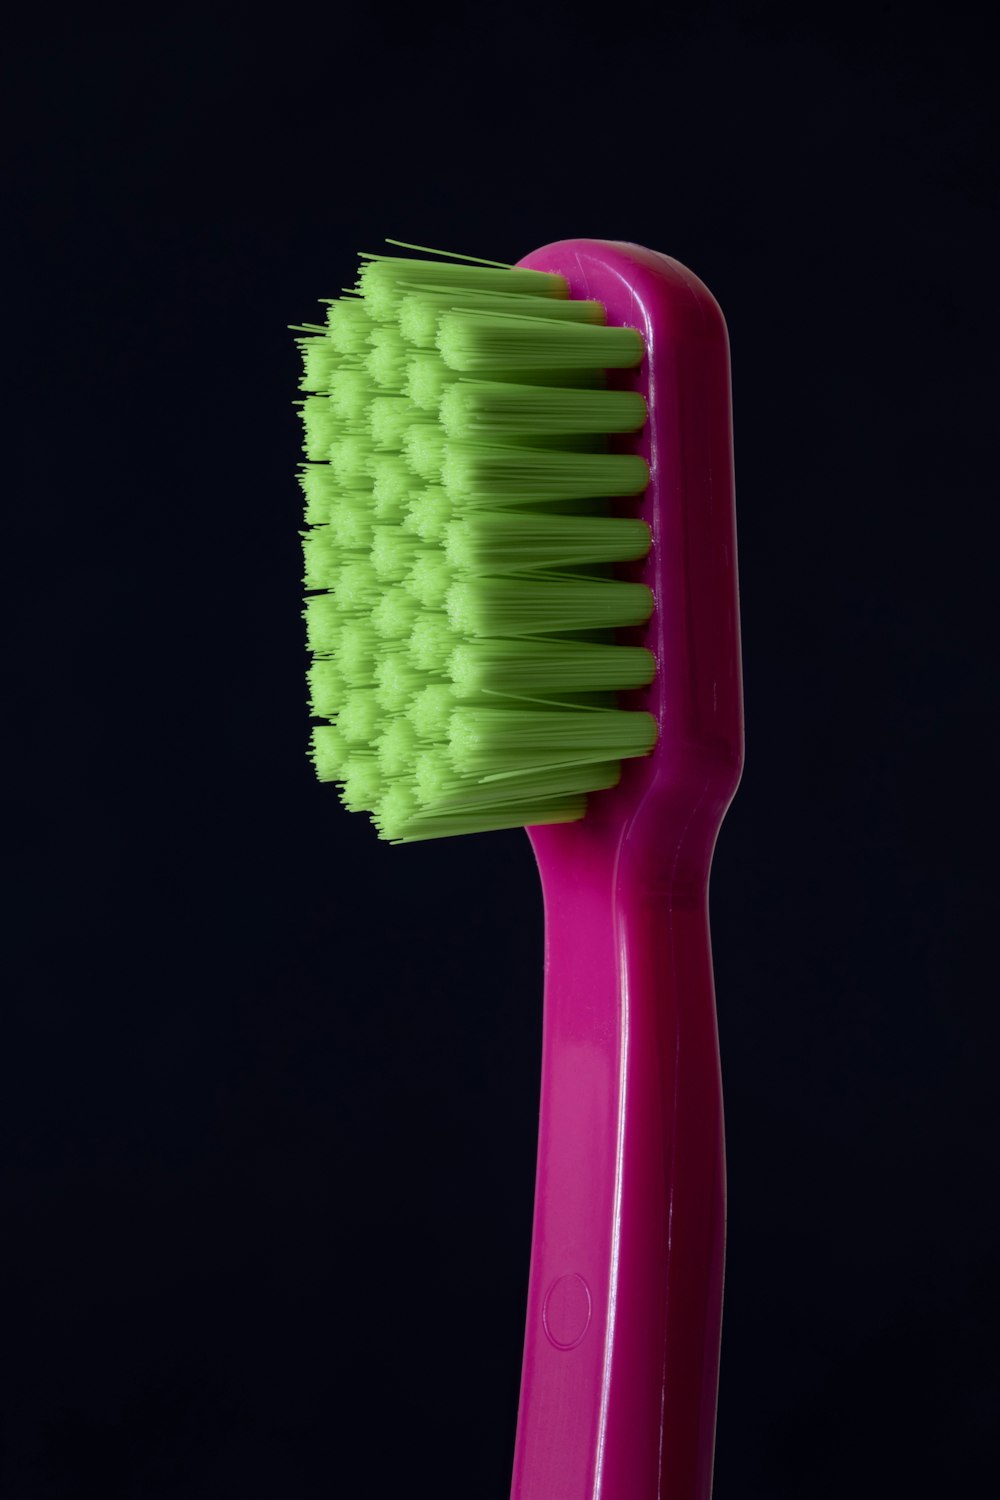 foto en primer plano del cepillo de dientes morado y verde